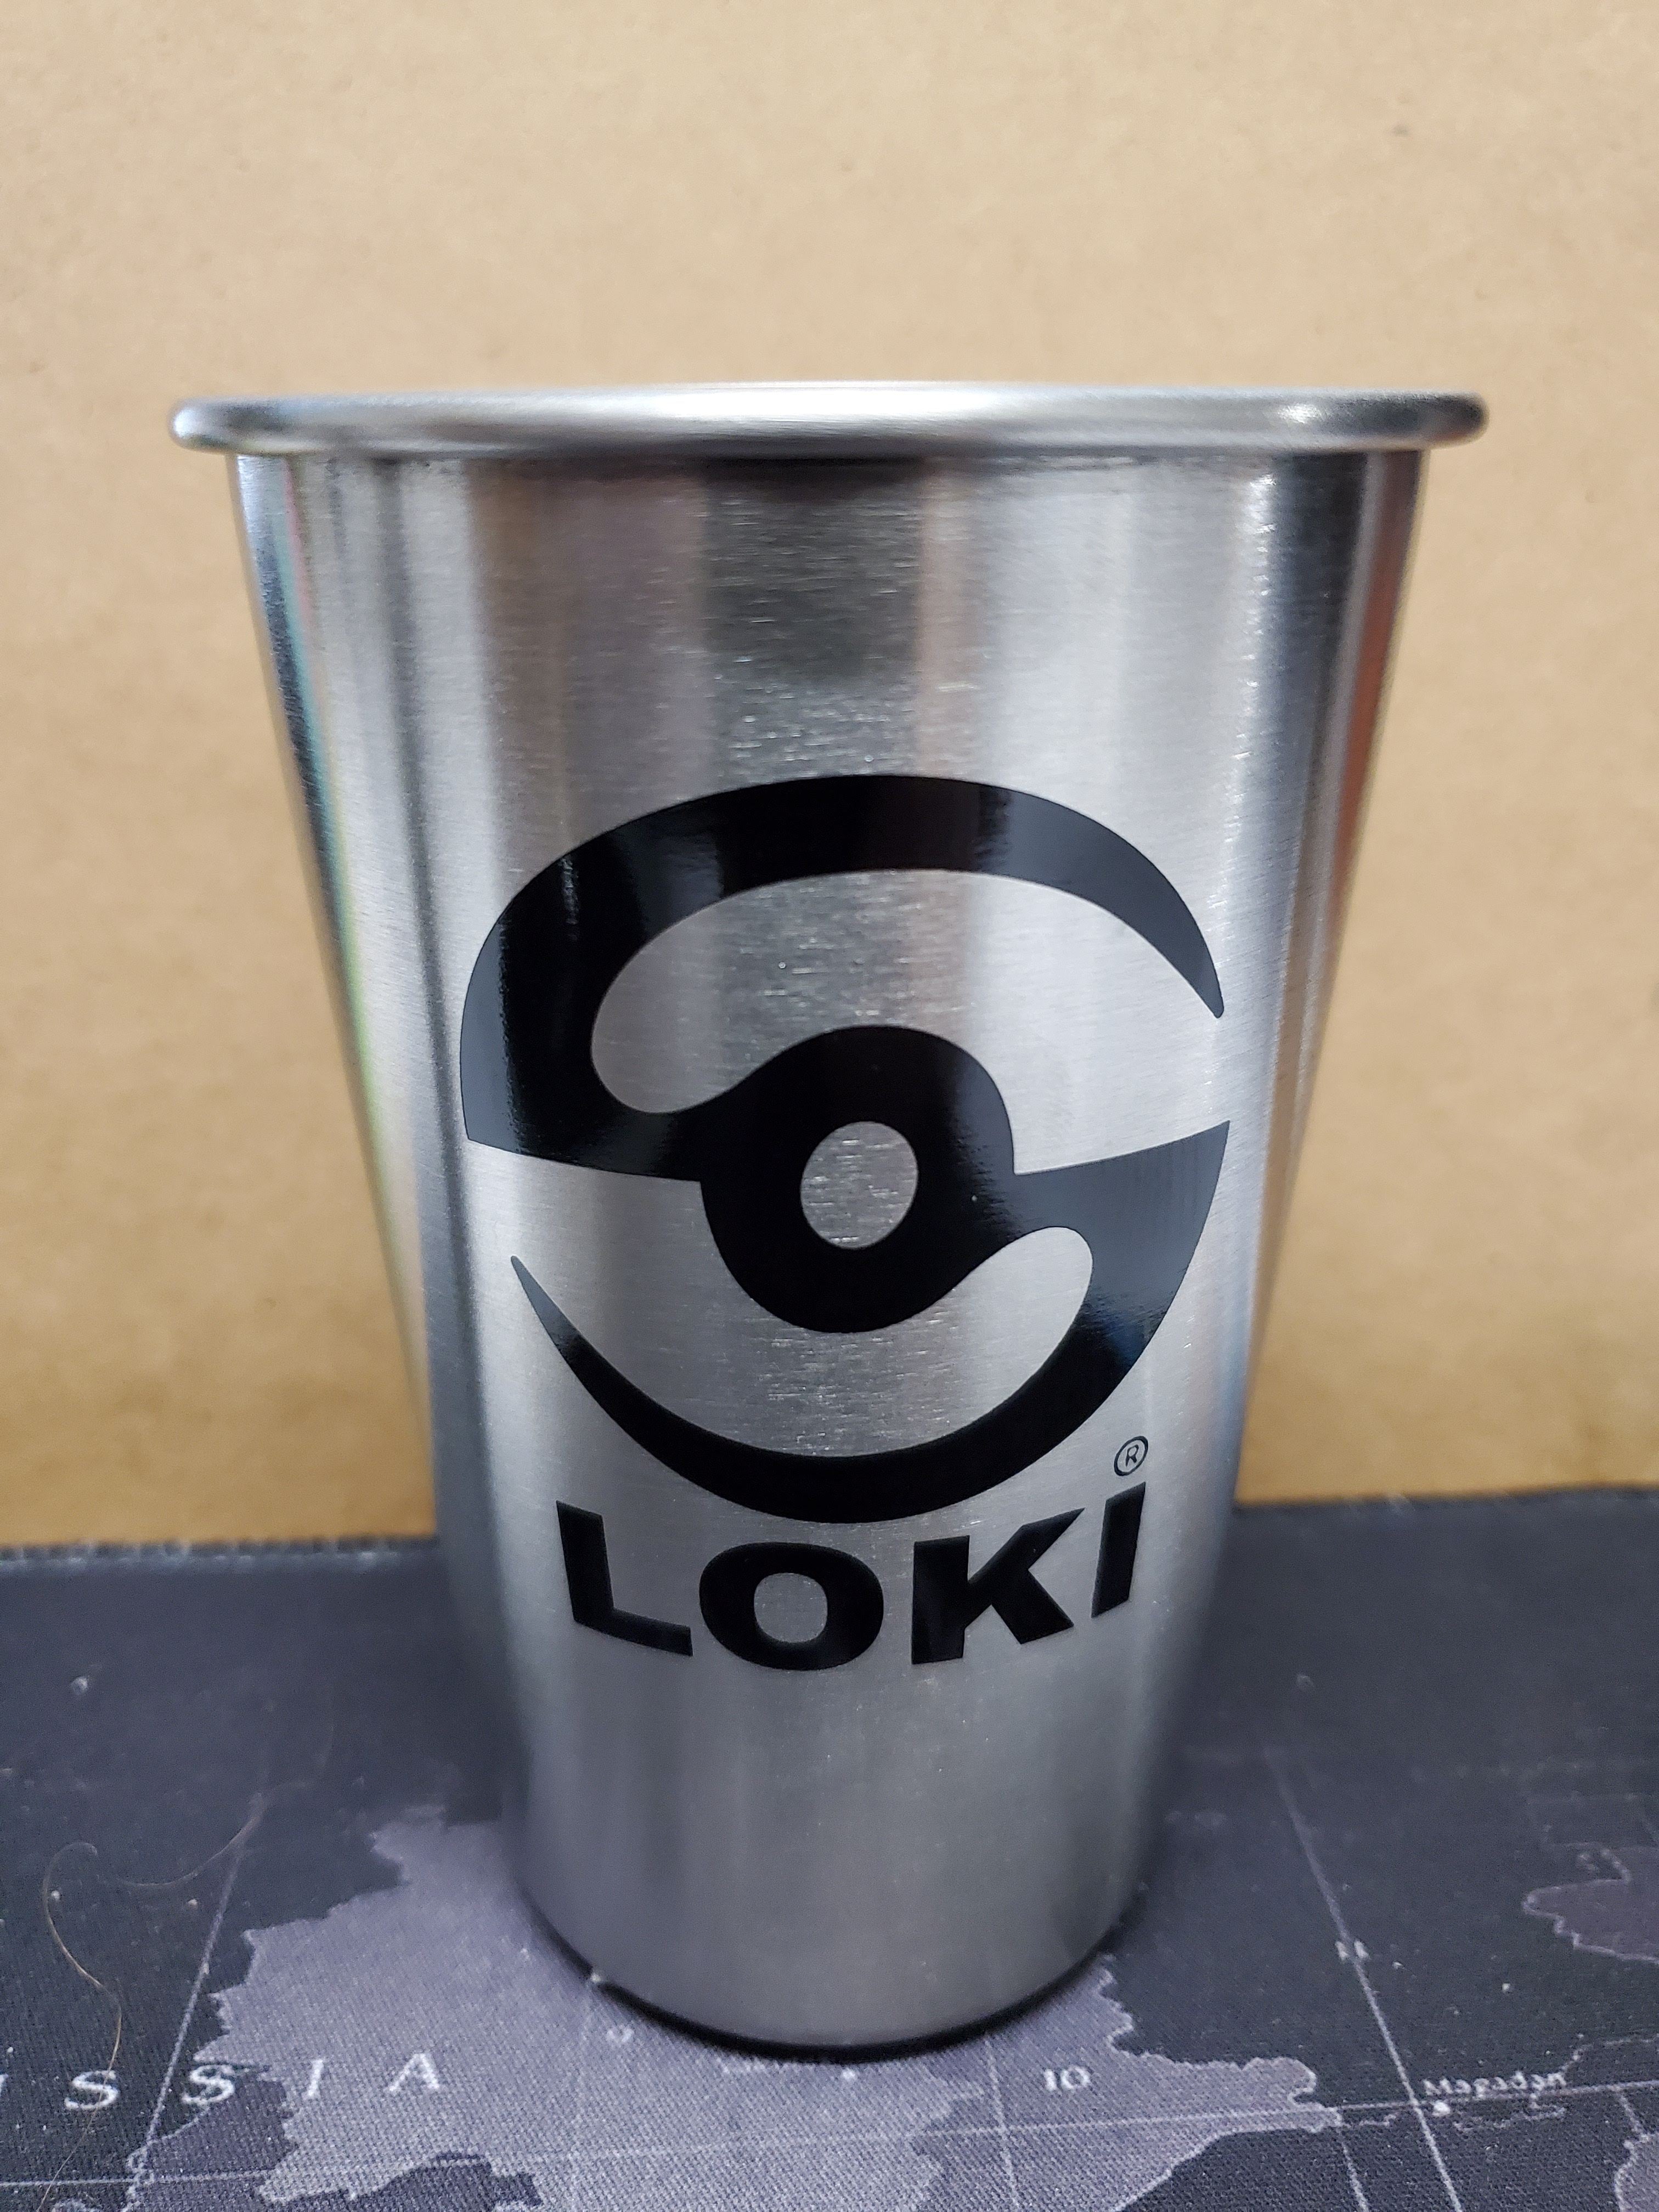 16 oz Stainless Steel Pint with Loki Logo